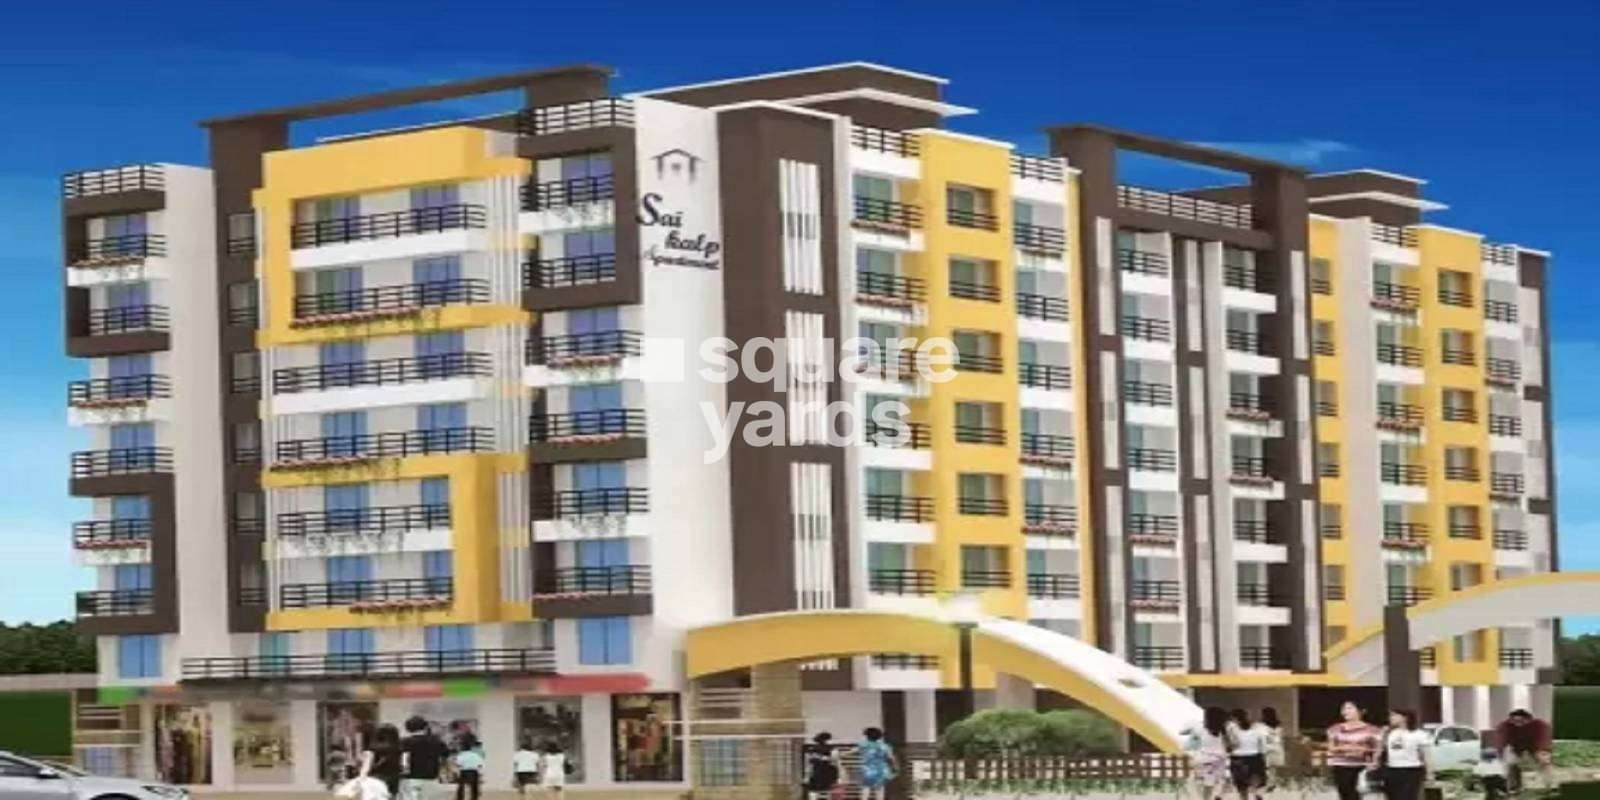 Sai Kalp Apartment Cover Image